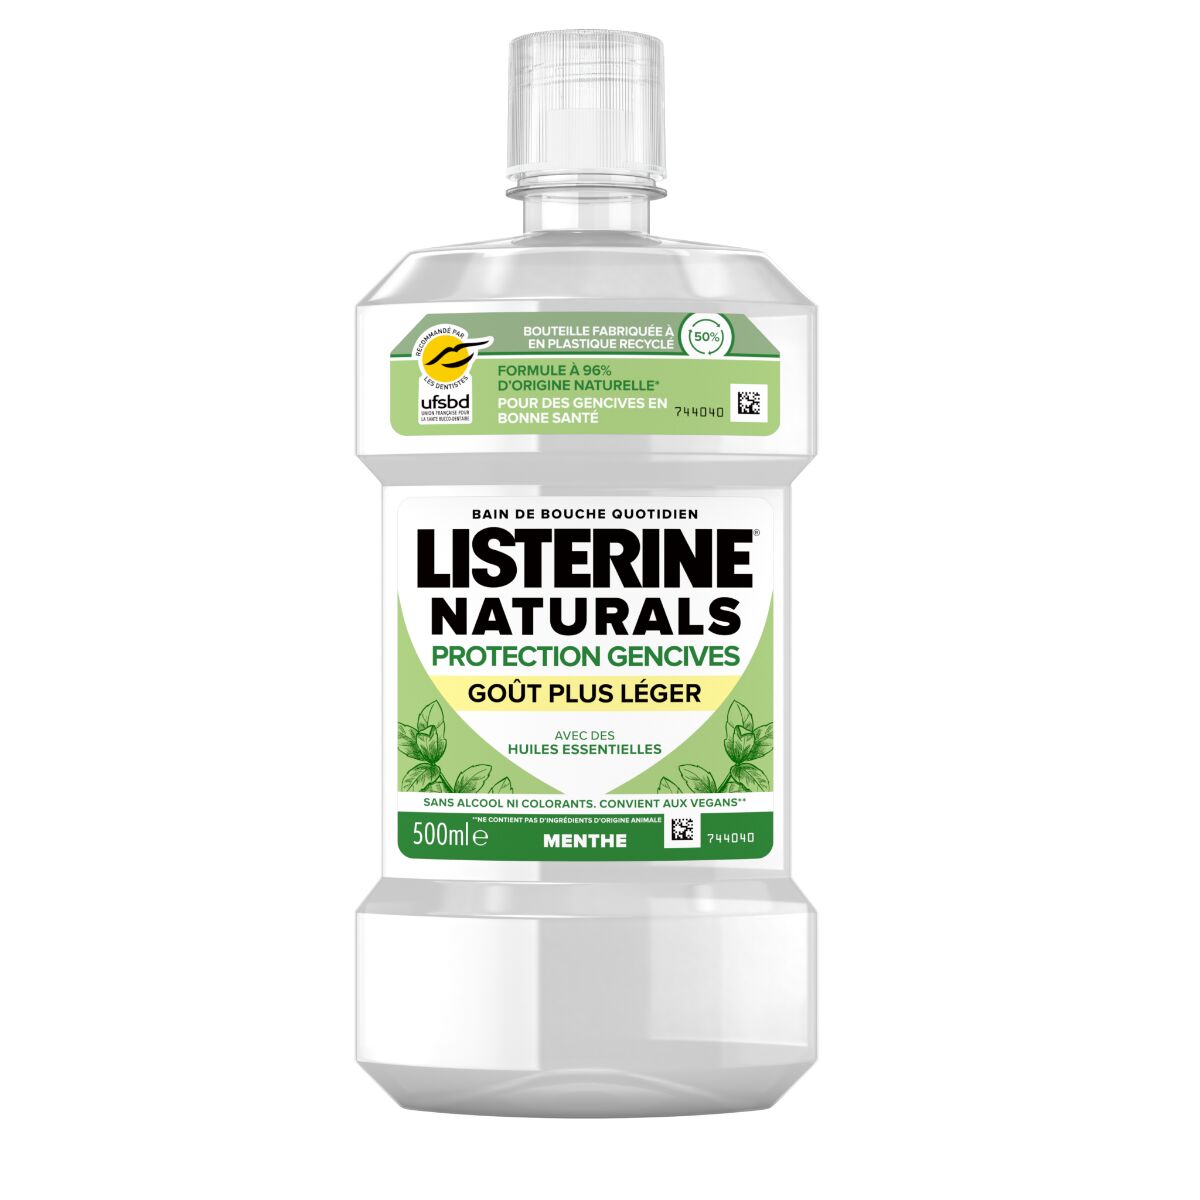 Listerine Naturals Bain de Bouche Quotidien Protection Gencives Menthe, 500ml